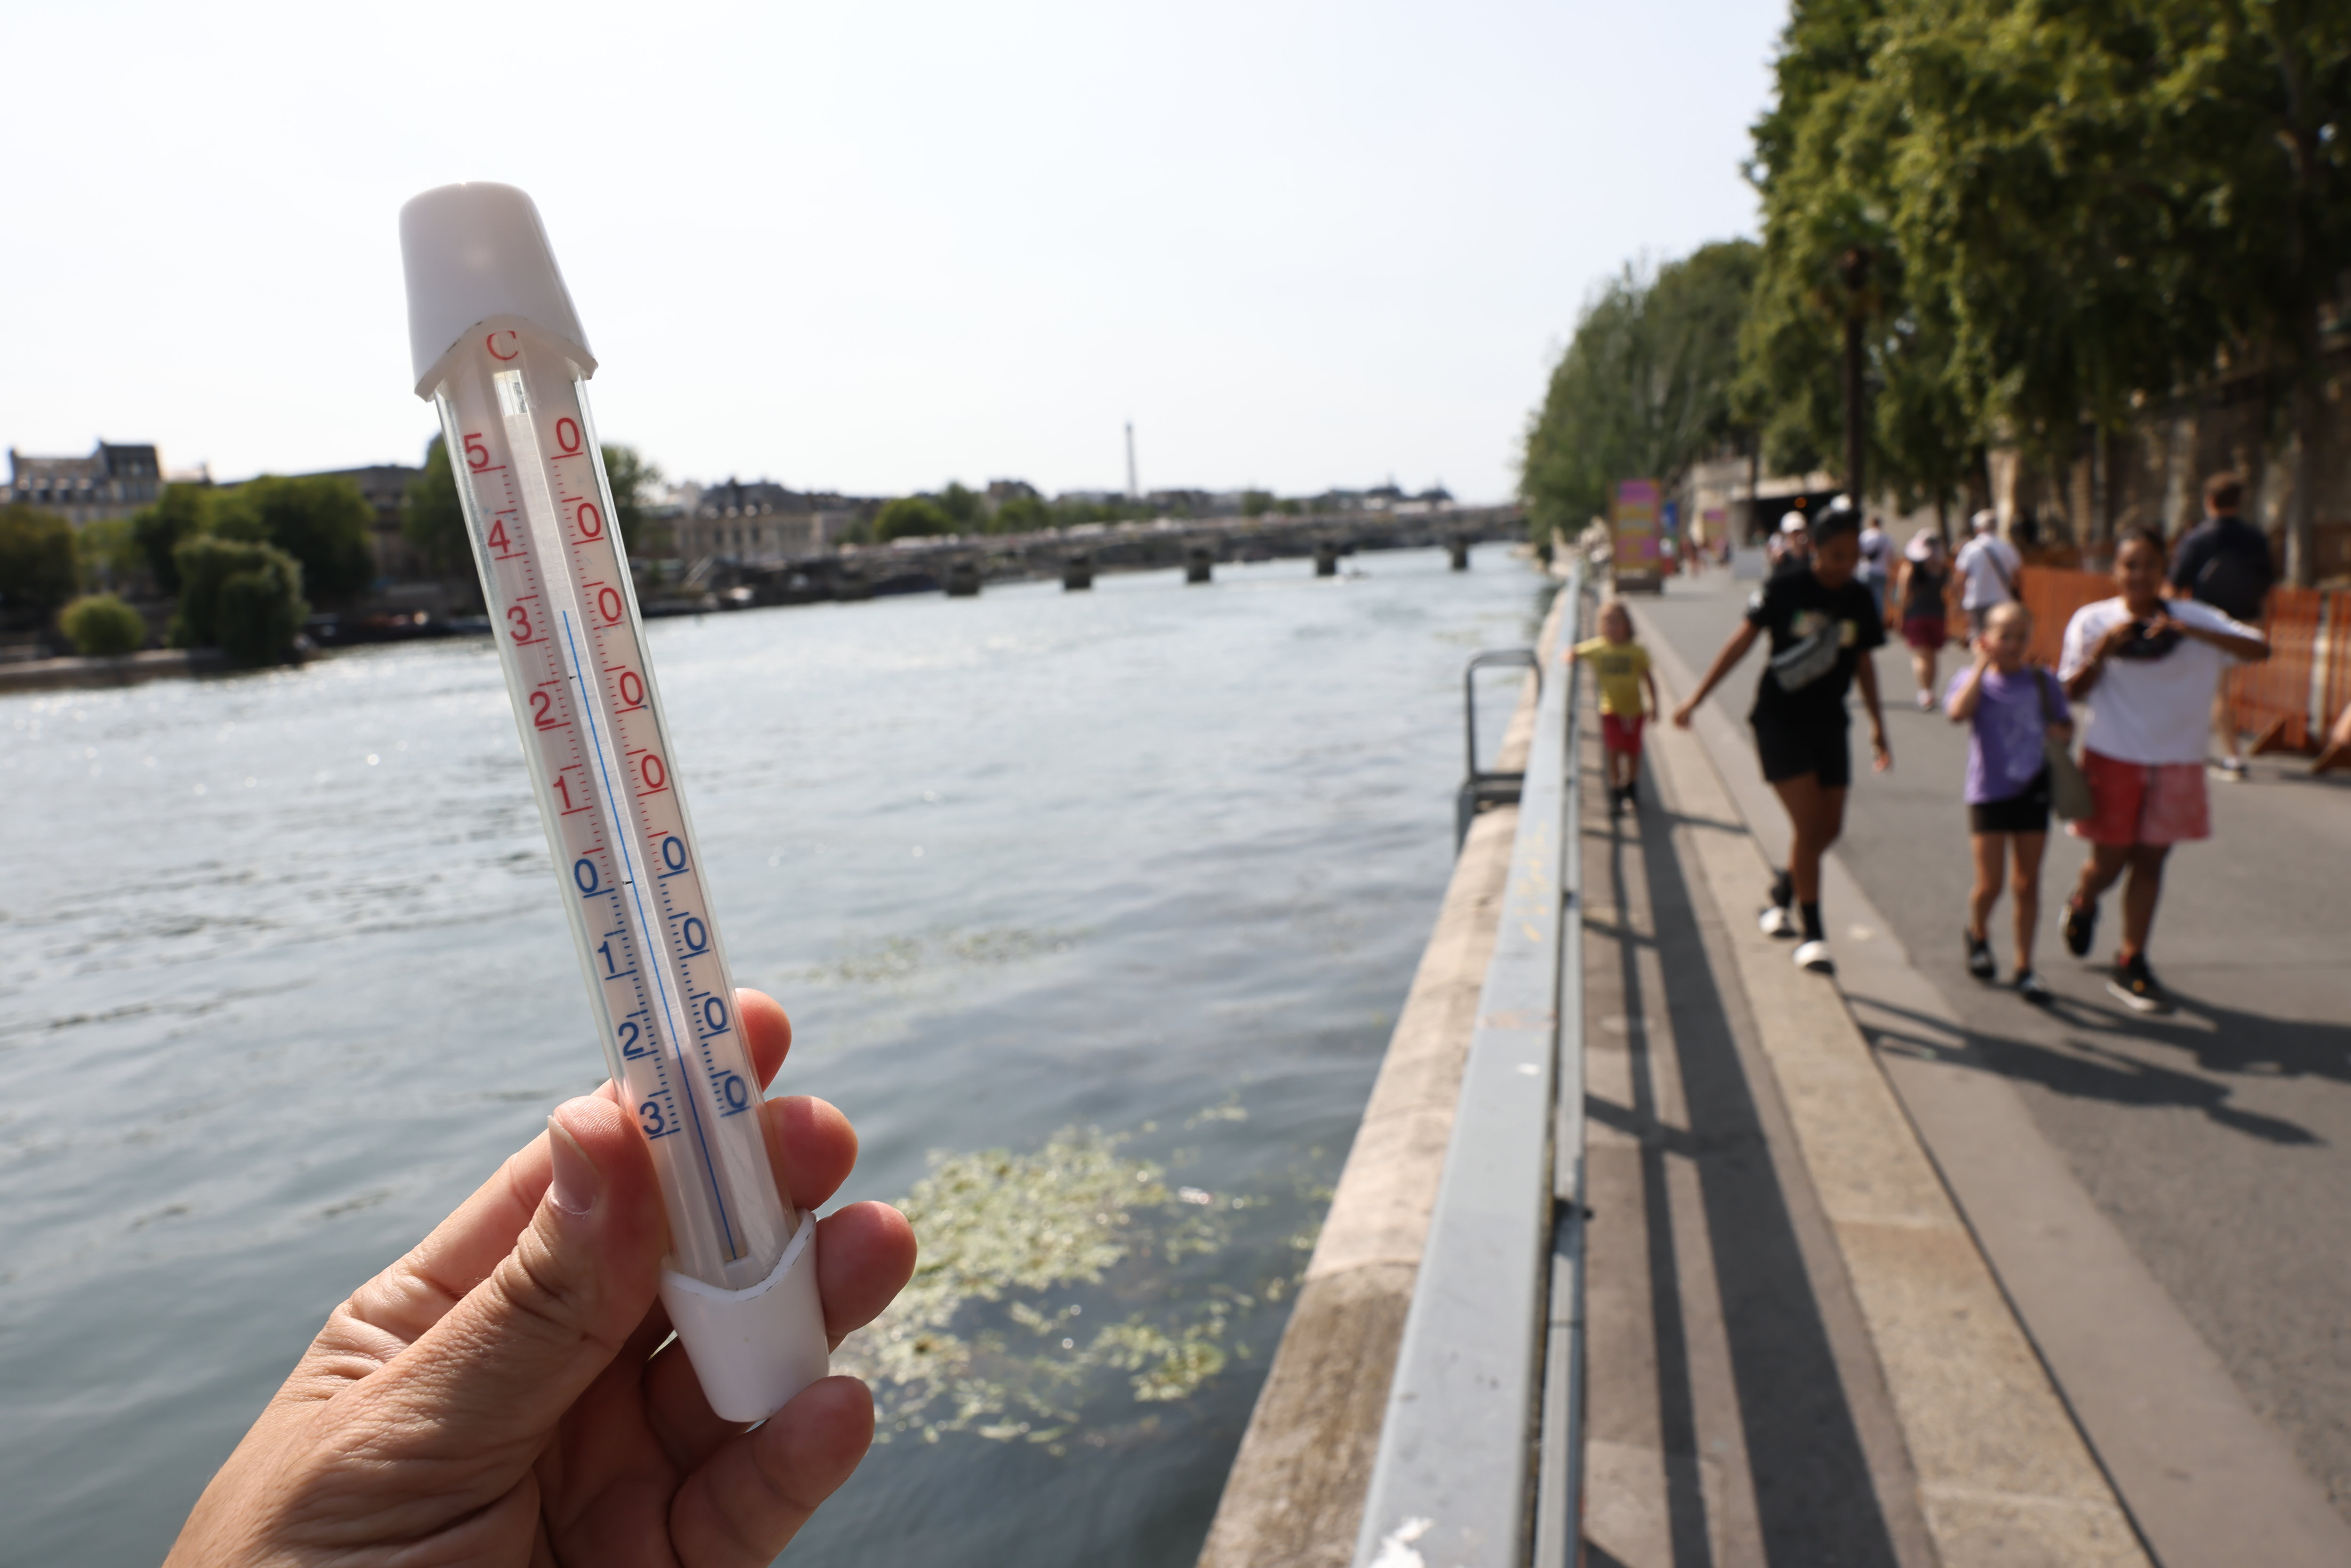 En plein soleil, la température va une nouvelle fois largement dépasser les 30 °C ce samedi à Paris. Photo LP / Fred Dugit